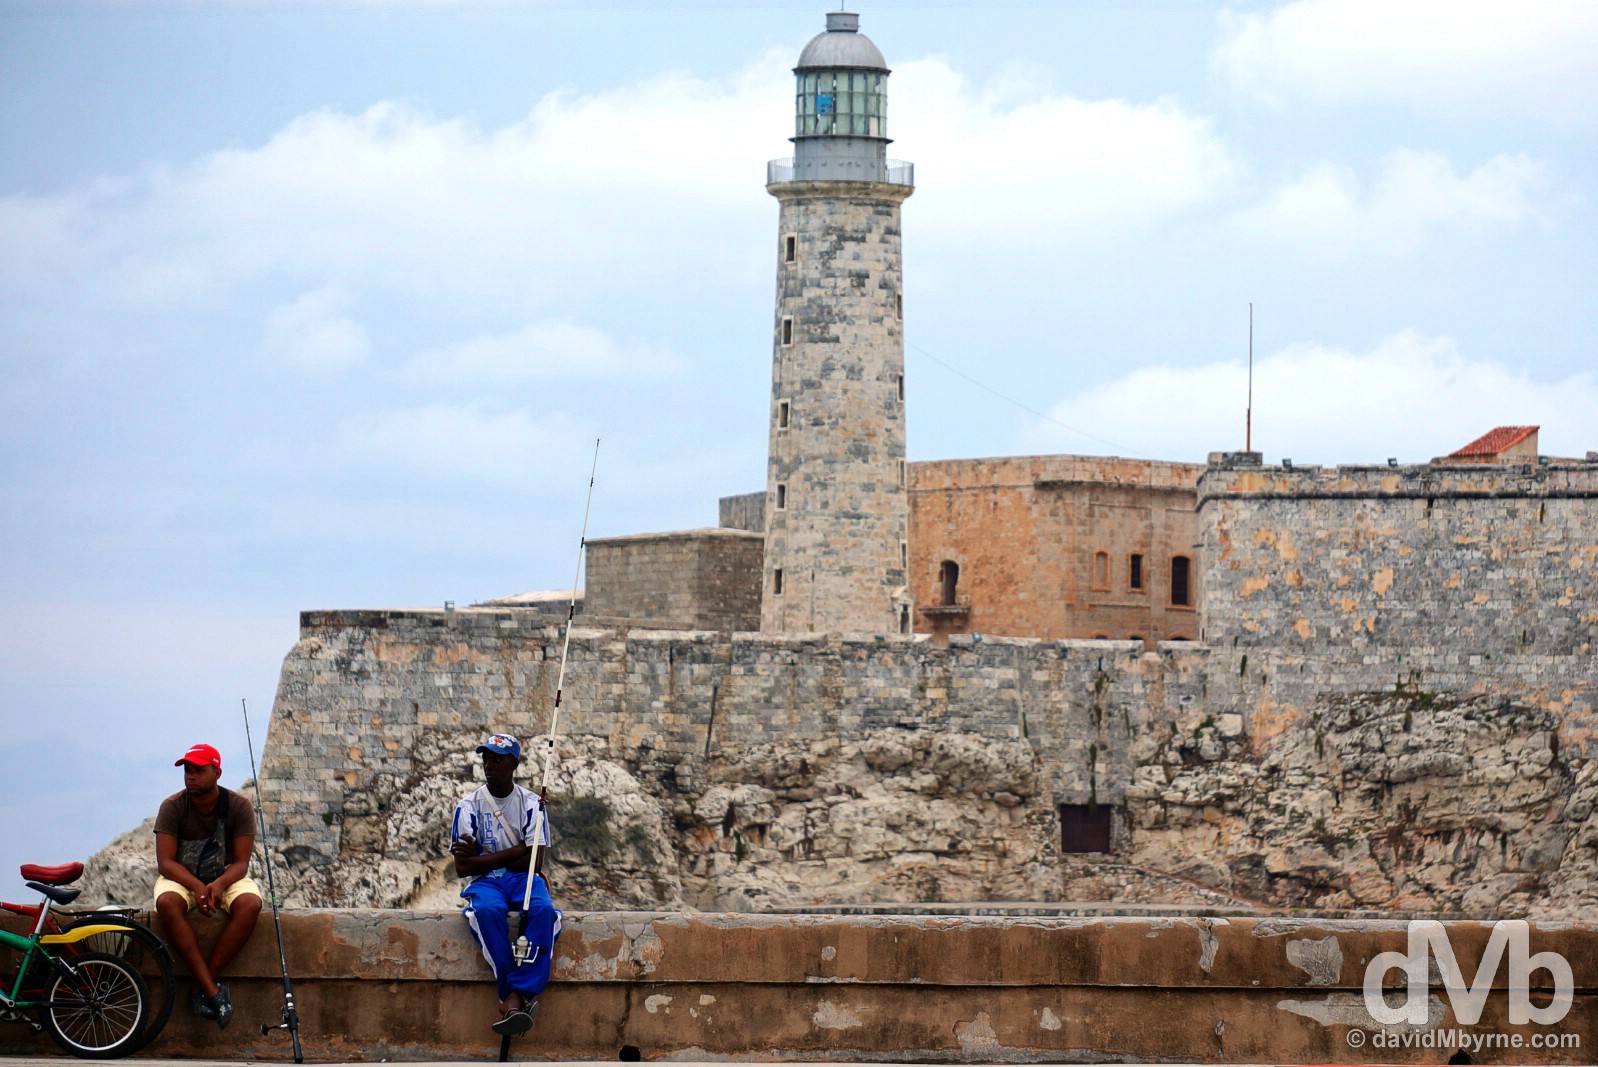 Sitting on the walls of the Malecon fronting Castillo de San Salvador de la Punta in Havana, Cuba. April 30, 2015.